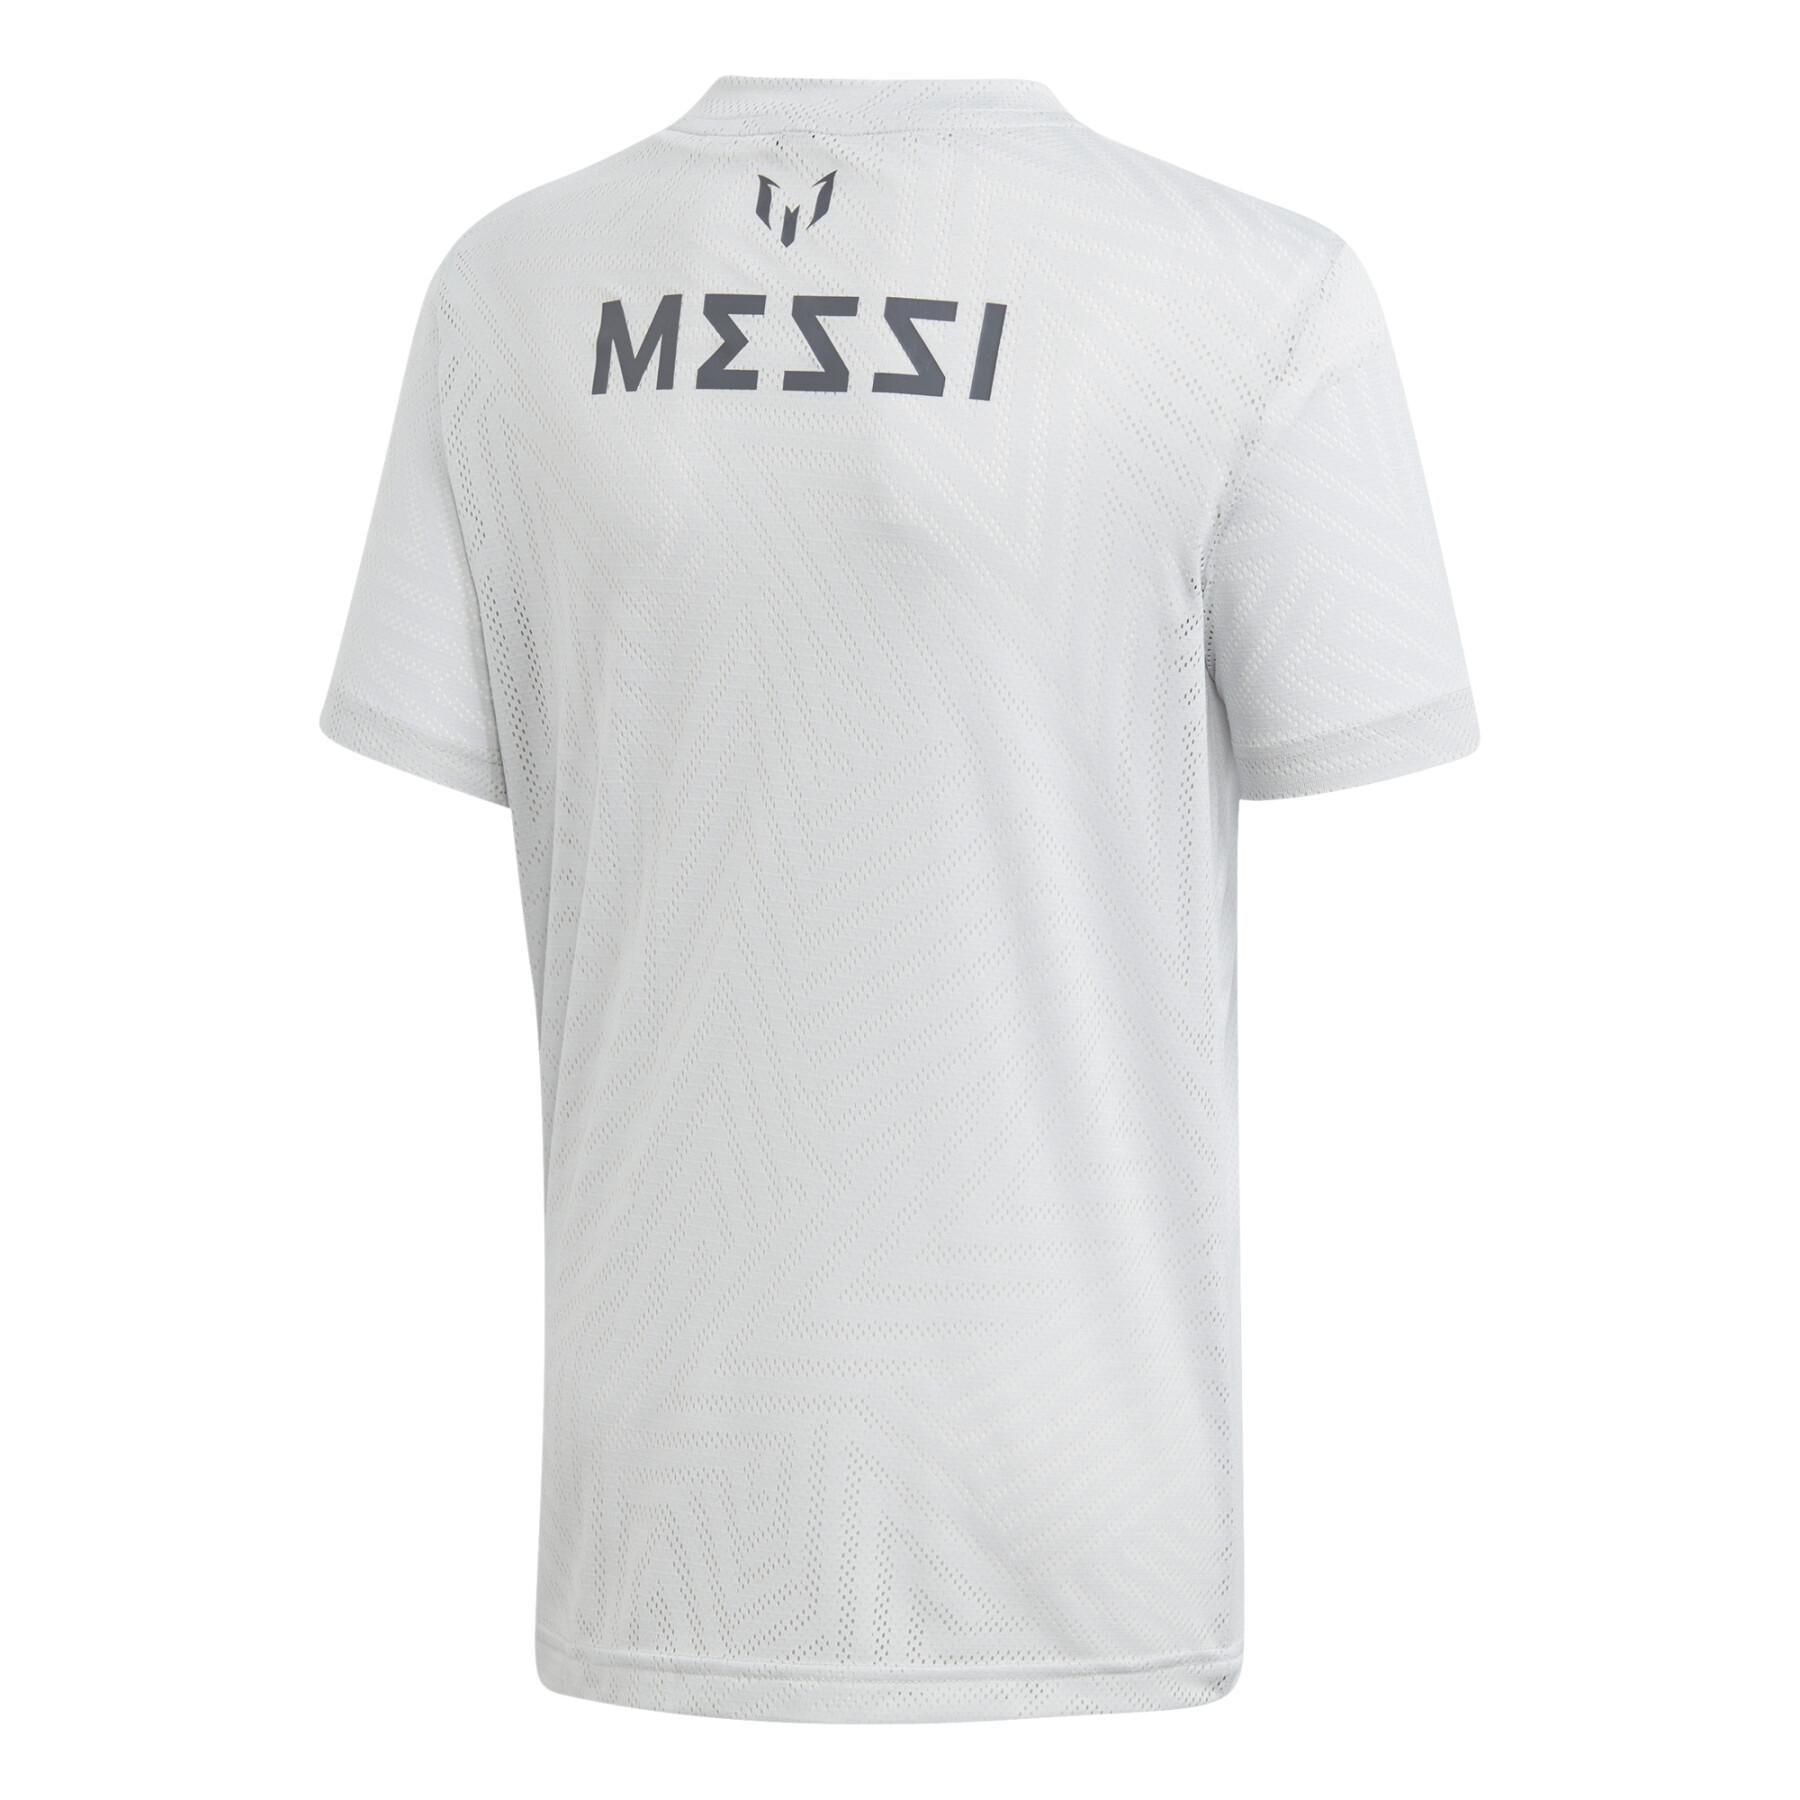 Children's jersey adidas Messi Icon